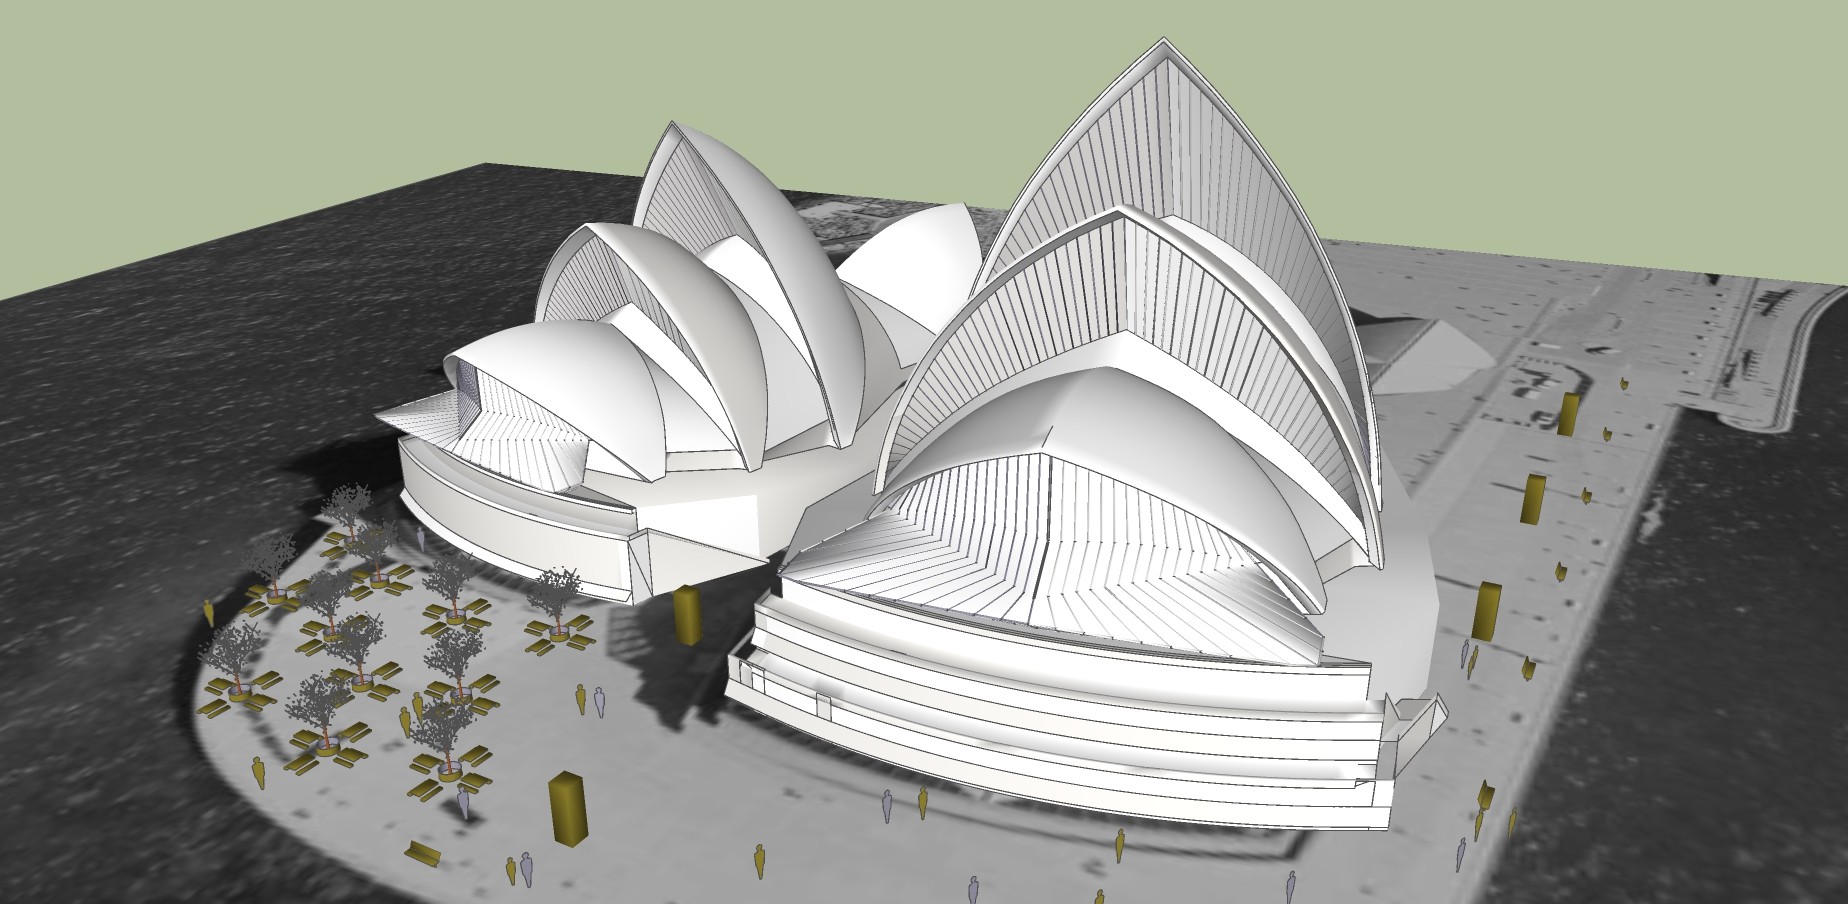 111歌剧院 剧院  澳大利亚悉尼歌剧院  演绎中心  剧场  现代艺术风格建筑  城市文化中心 音乐厅su草图模型下载